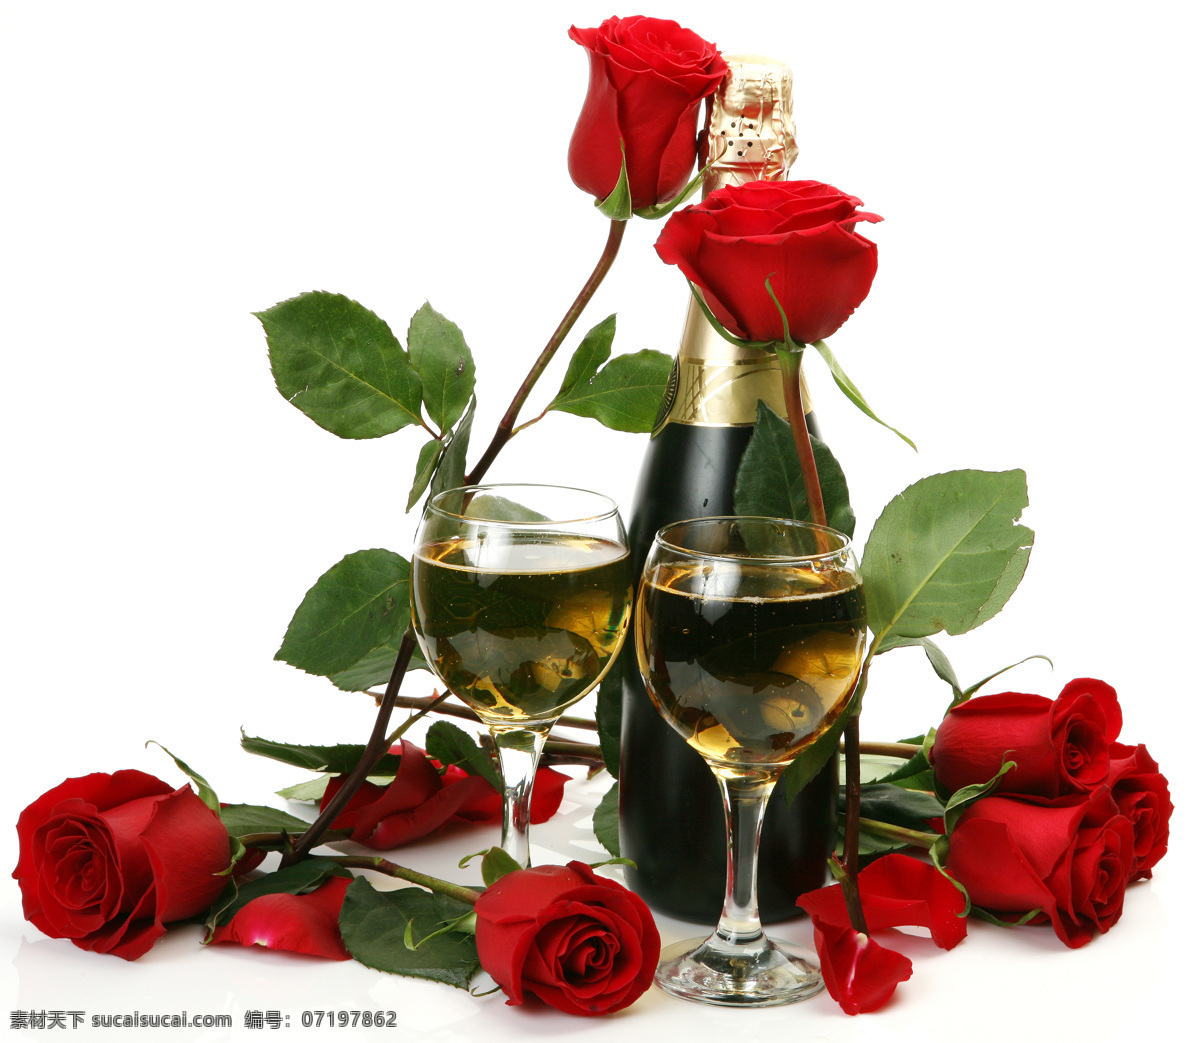 玫瑰花 香槟 美酒 鲜花 酒杯 高脚杯 红玫瑰 酒瓶 酒类图片 餐饮美食